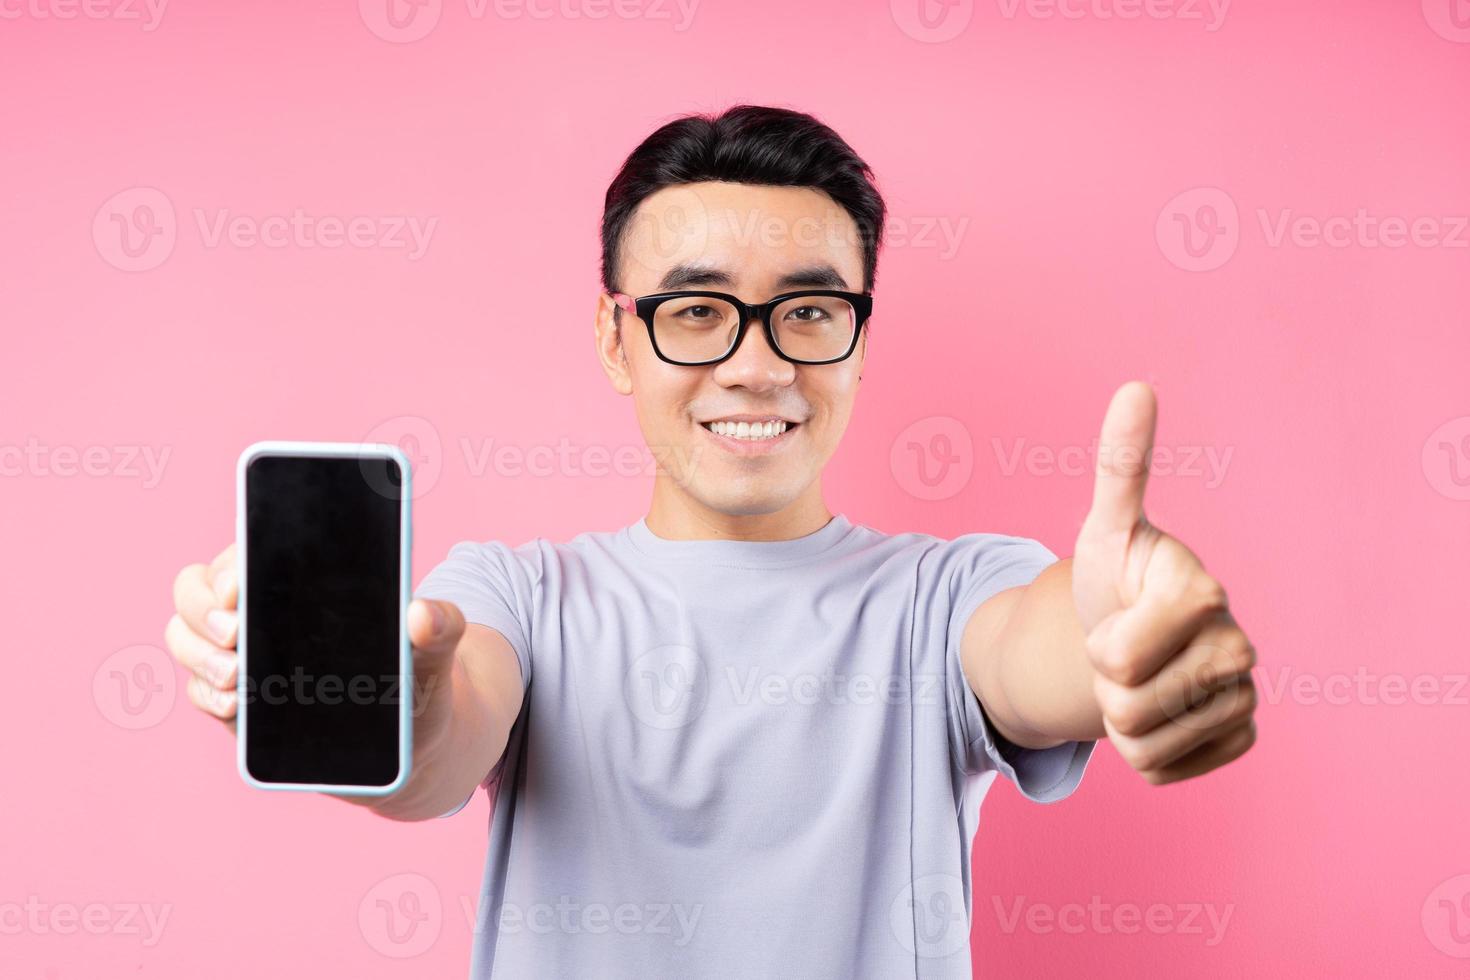 portrait d'un homme asiatique utilisant un smartphone sur fond rose photo